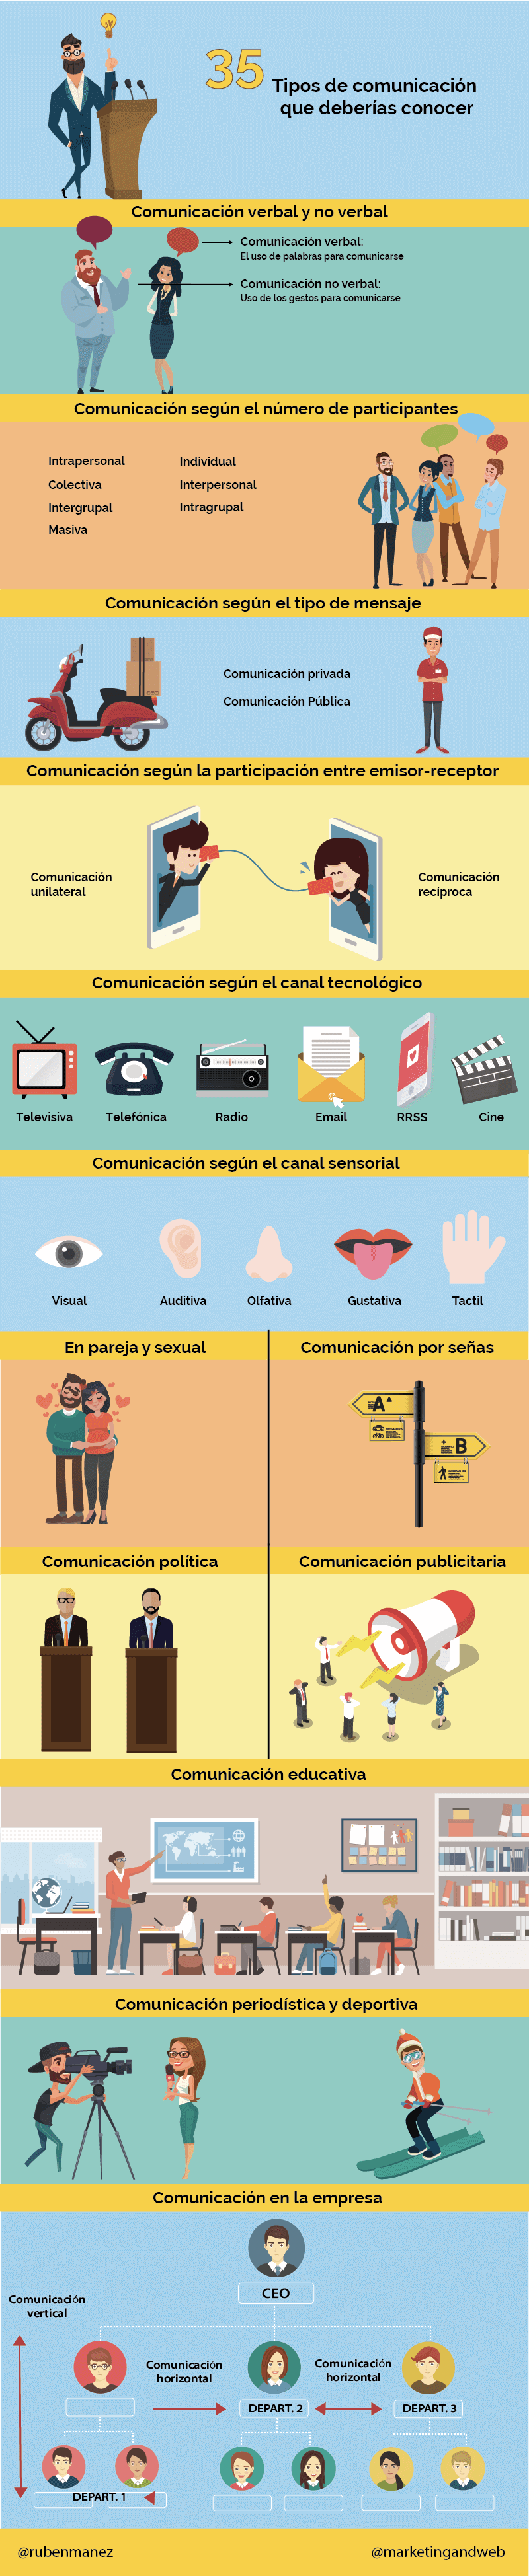 infografía tipos de comunicación